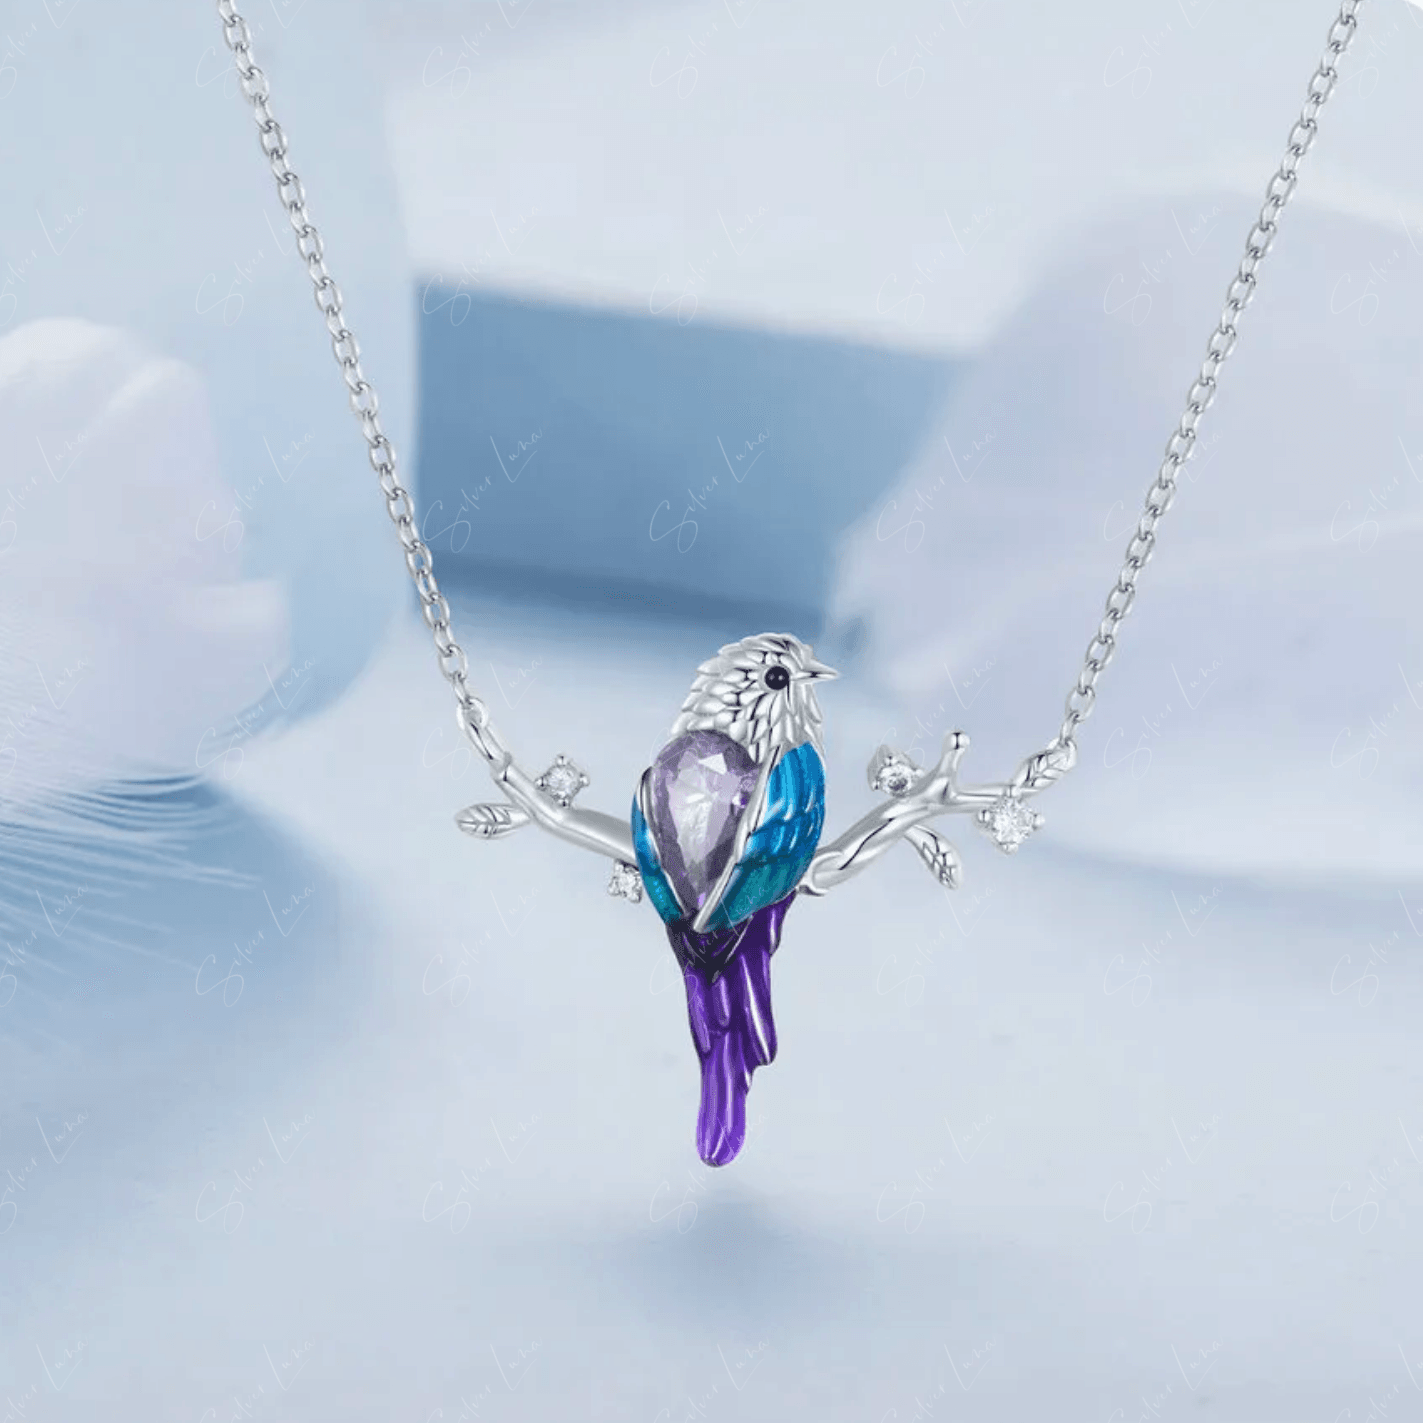 mocking bird pendant necklace